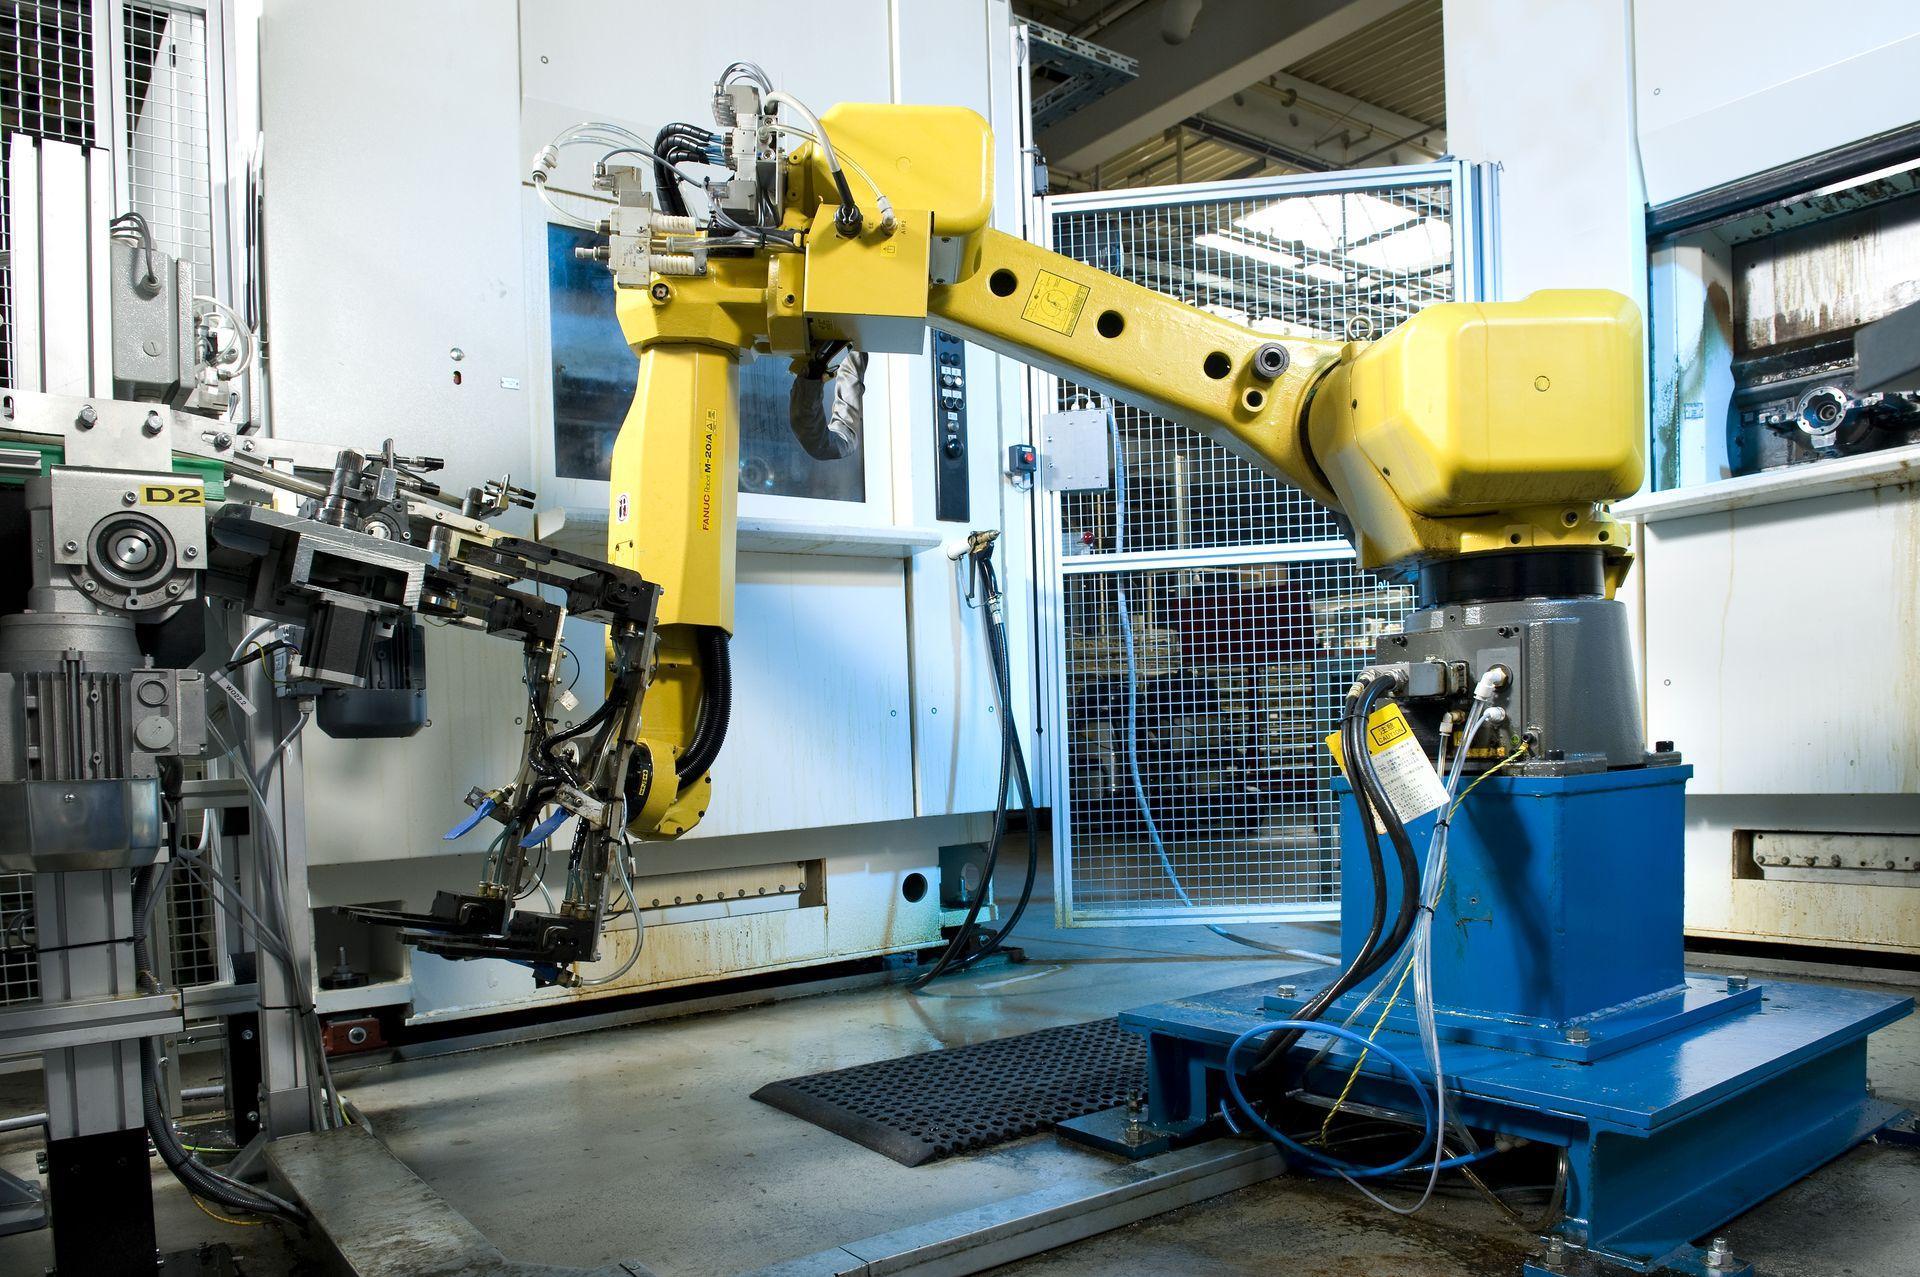 Roboty vedia obsluhovať množstvo strojov, od CNC obrábacích centier až po priemyselné práčky